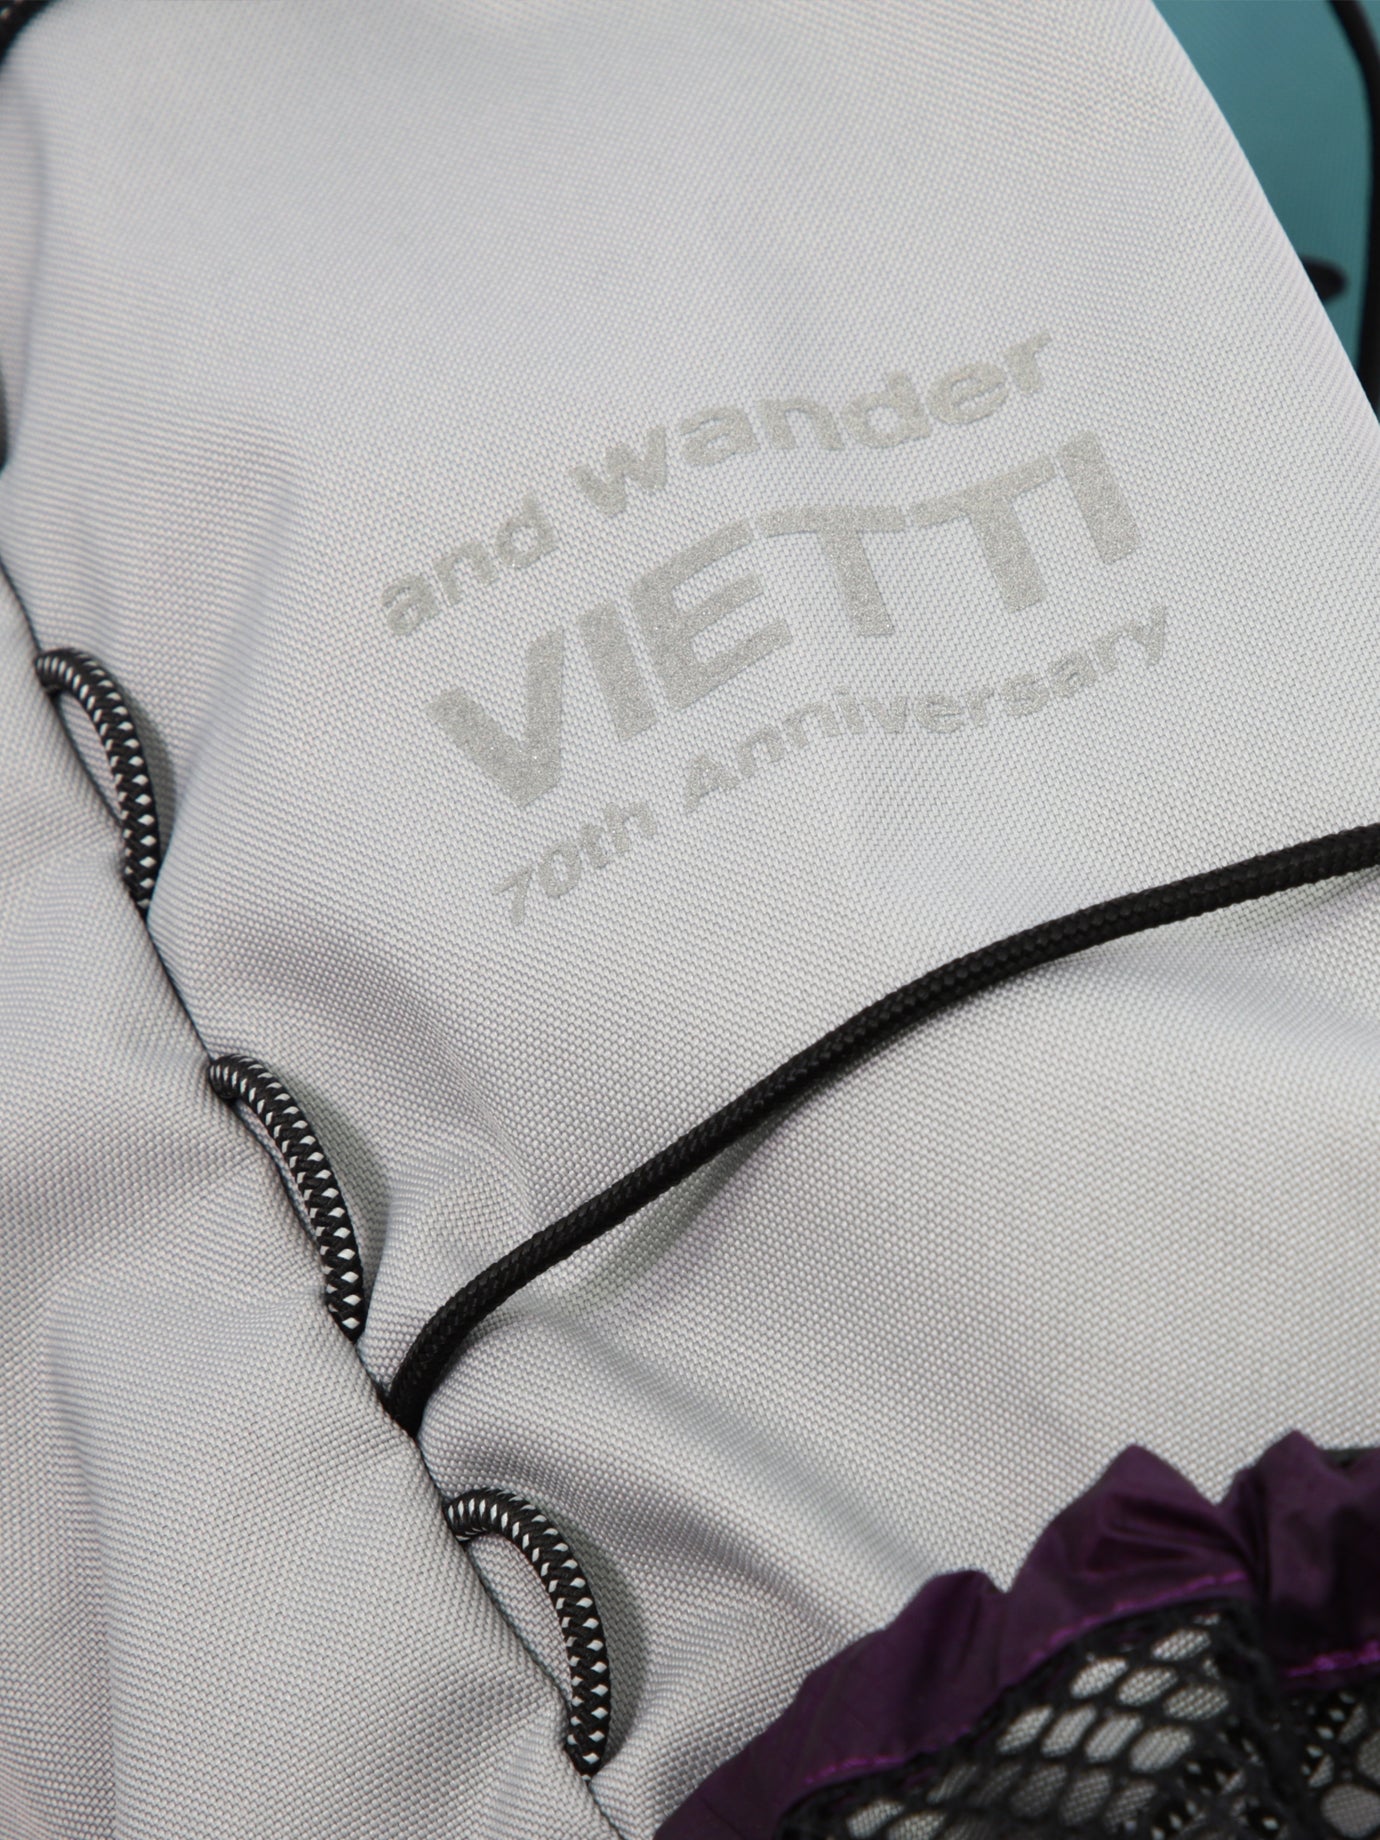 "And Wander x VIETTI 70th Anniversary" backpack